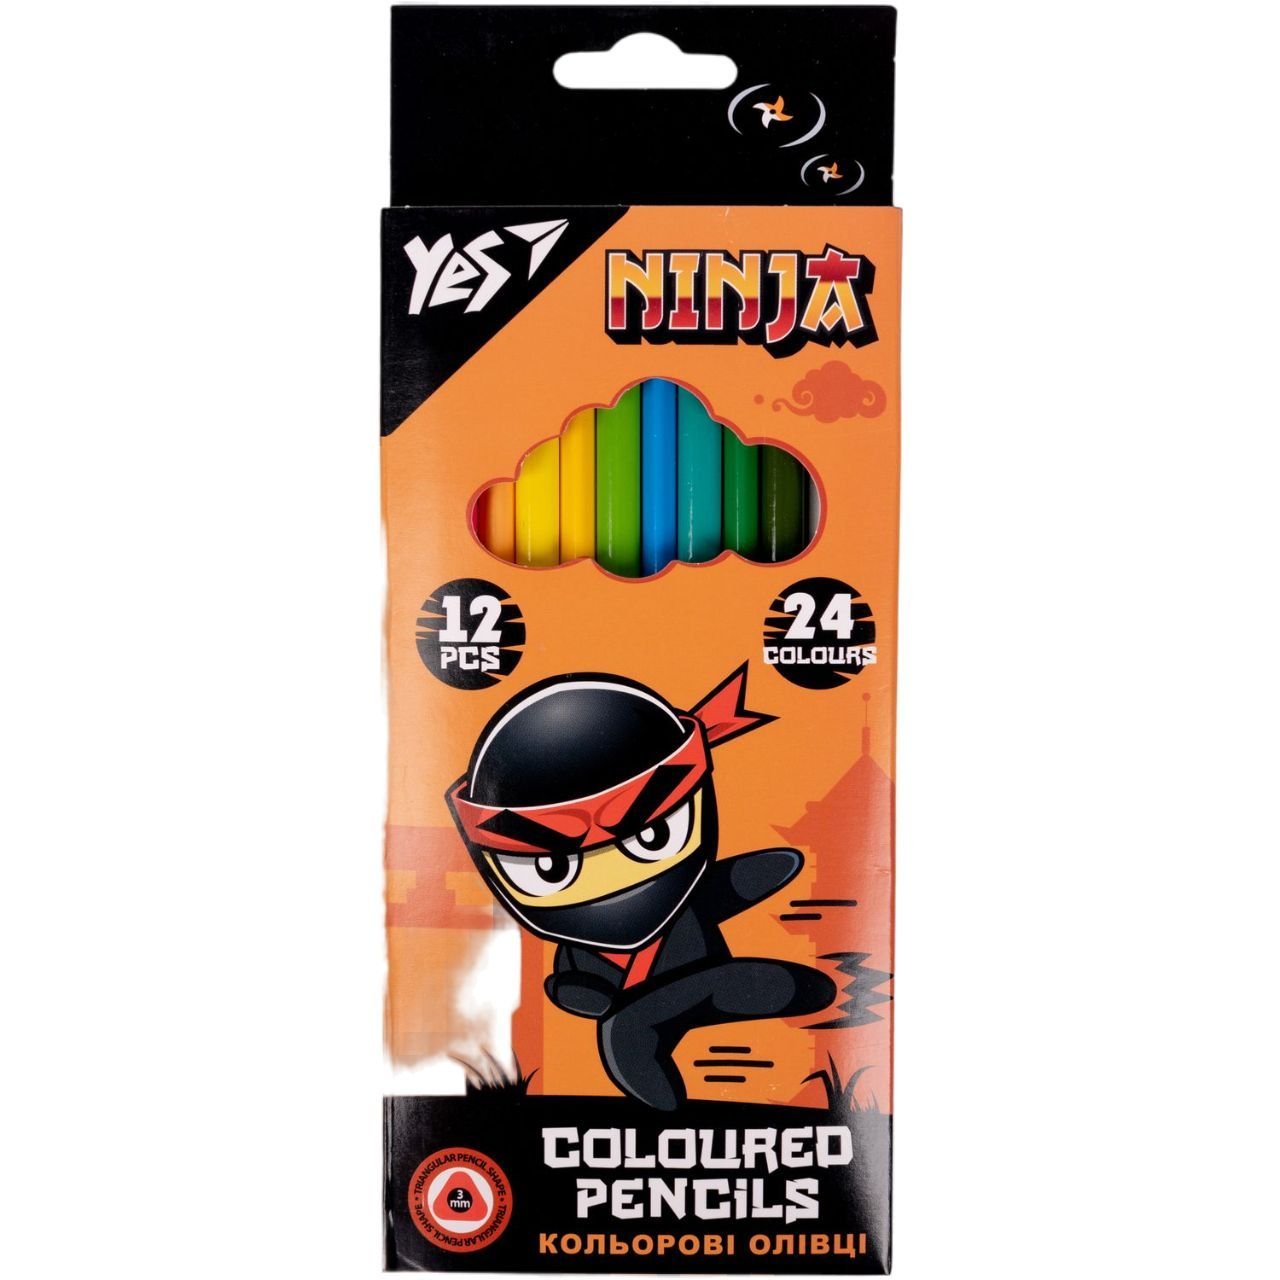 Фото - Олівці Yes  кольорові  Ninja, двосторонні, 12 шт., 24 кольори  (290707)